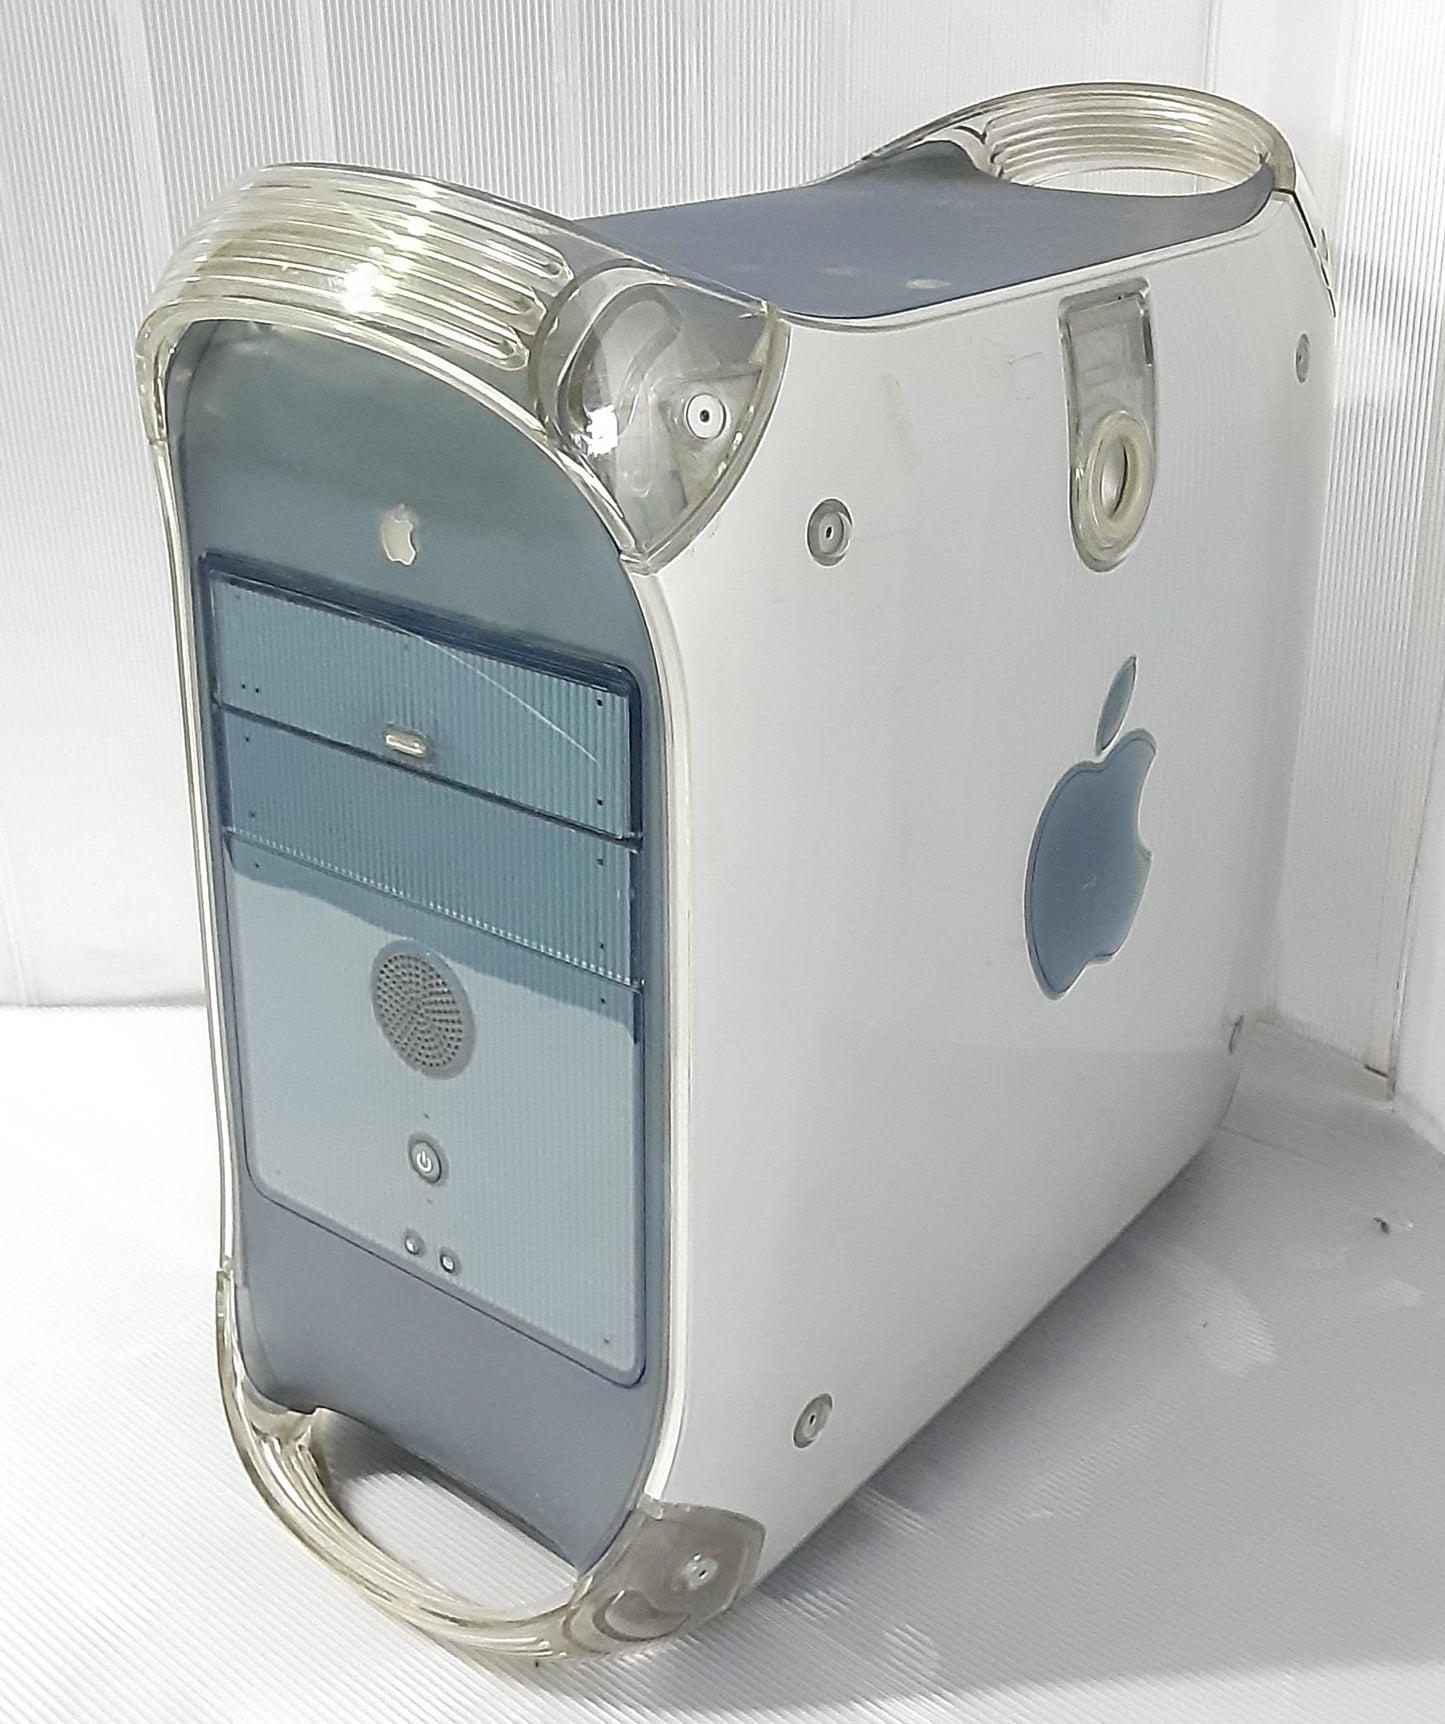 アップル(Apple)製 パソコン Power Mac G4 PC本体のみ HD抜き仕様 apple1-powermacg4-7001